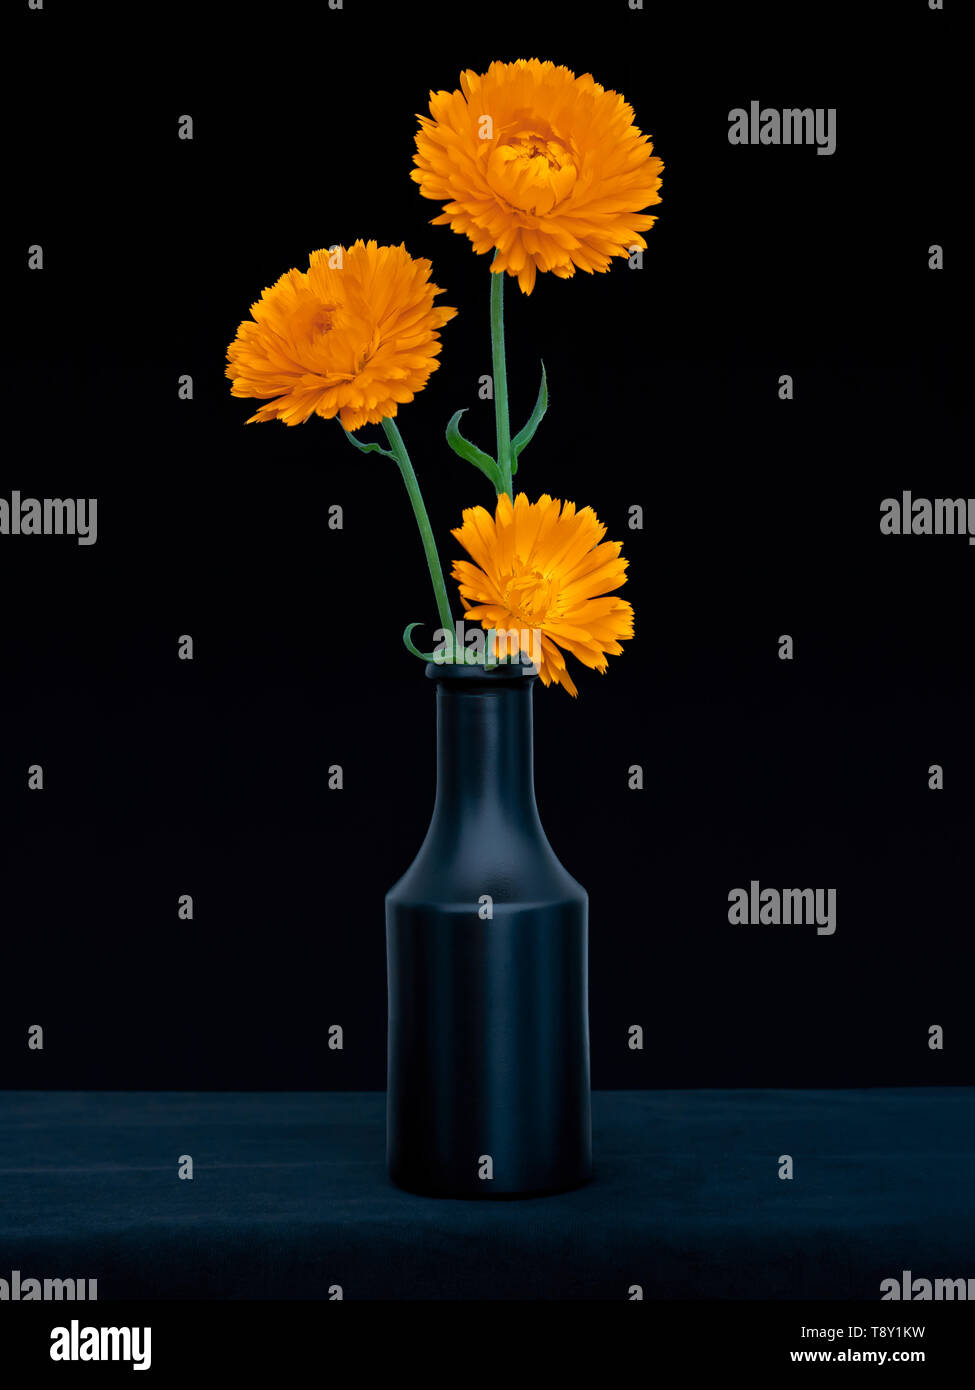 Helles orange Ringelblume Blumen, Calendula officinalis, gegen tief blauen Hintergrund. Genießbare Heilpflanze. Noch immer leben in dunklen Vase. Stockfoto